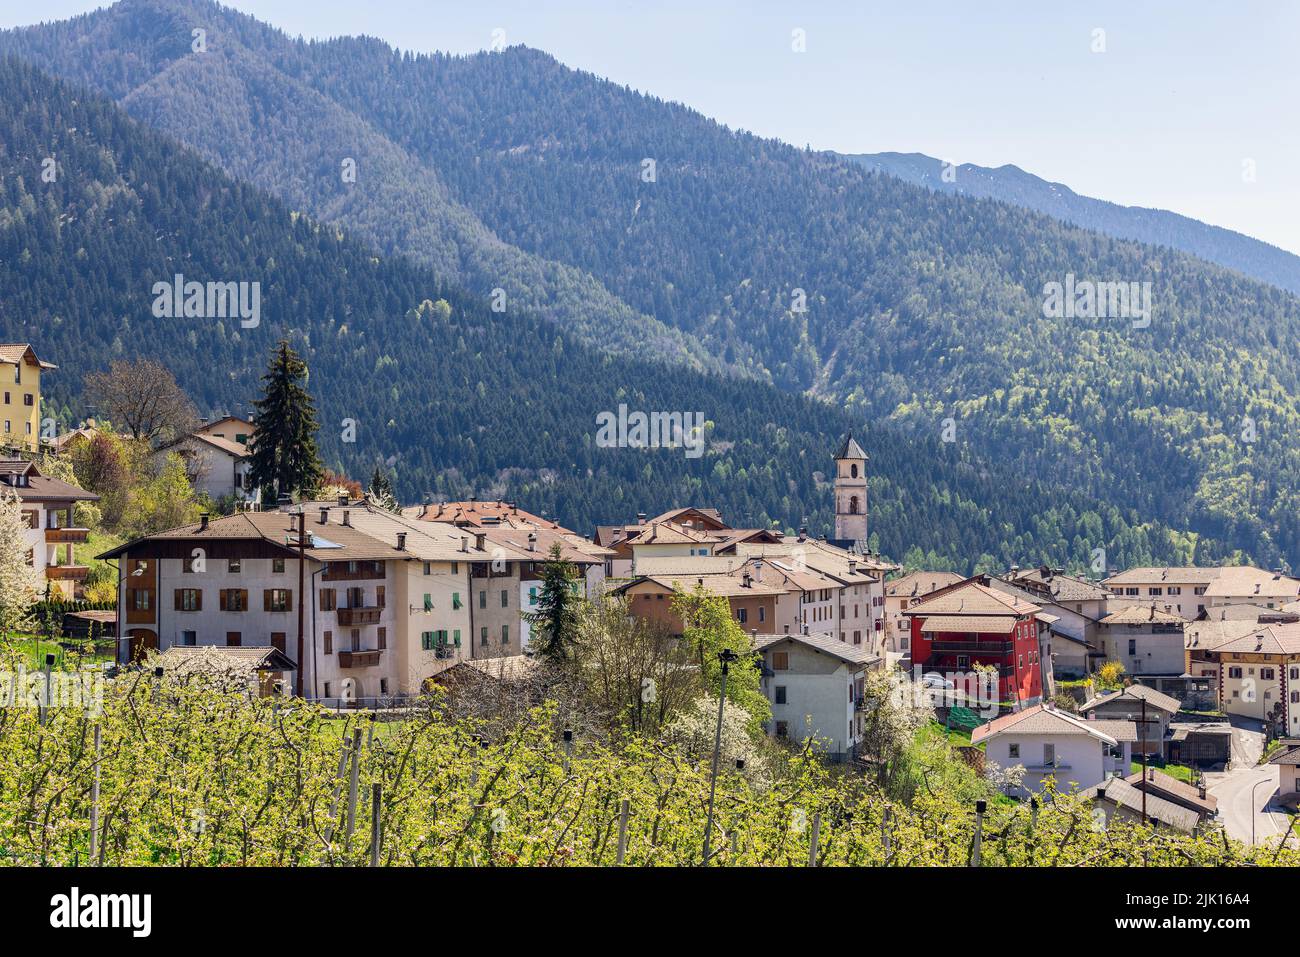 Vista panoramica sul borgo di Vervo con la chiesa di San Martino, pendii alpini densamente coltivati con foresta sempreverde sullo sfondo, Trentino, Italia Foto Stock